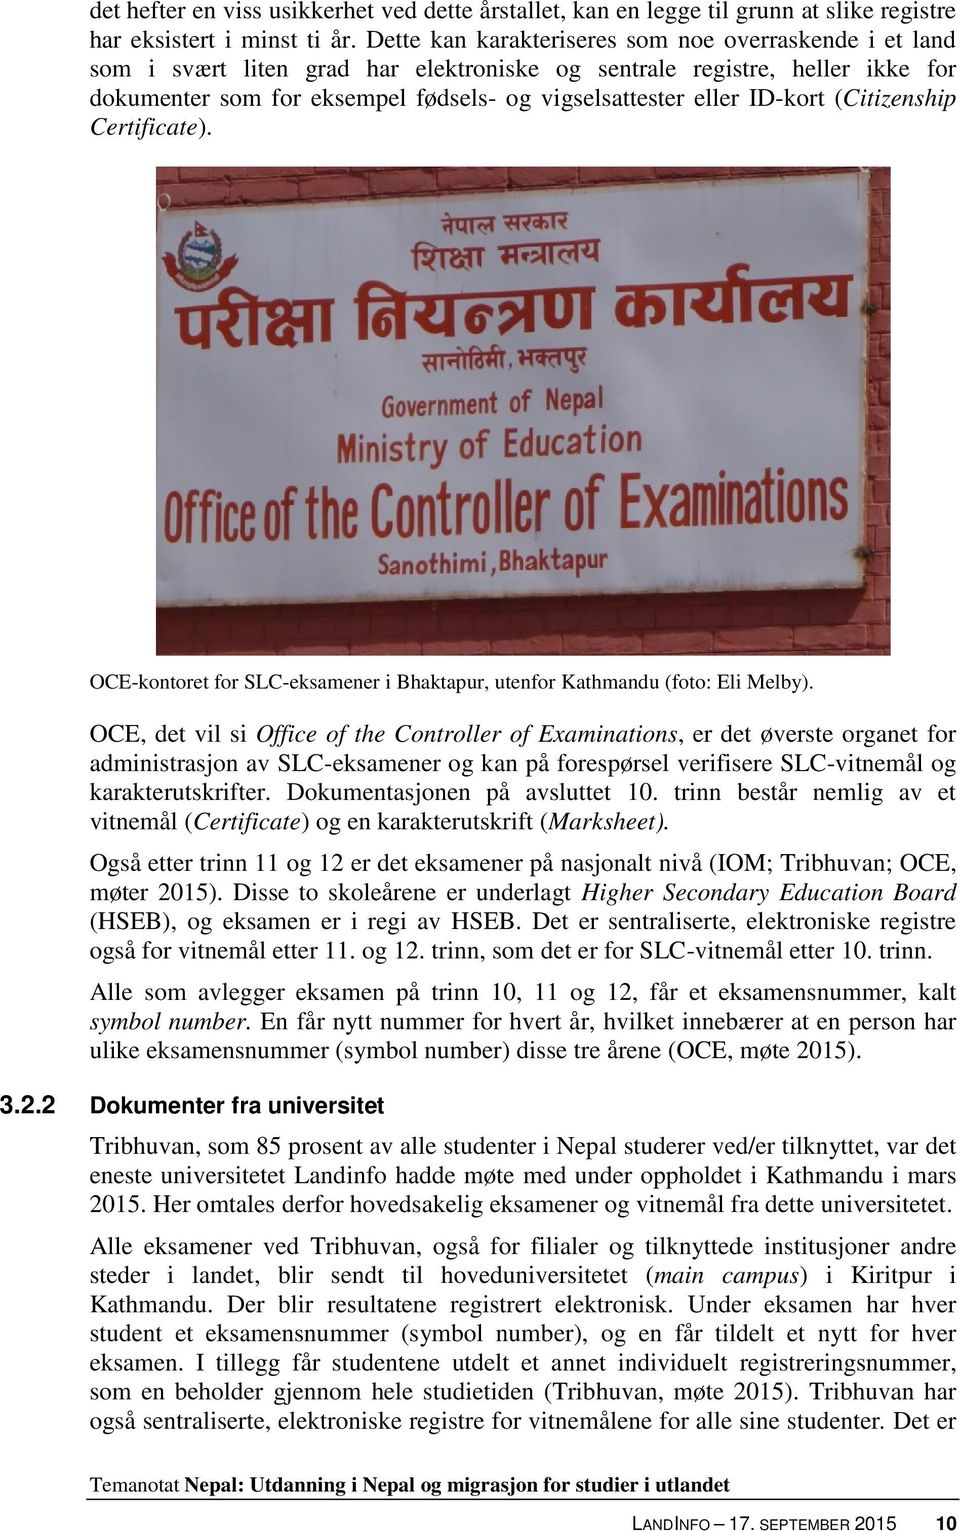 ID-kort (Citizenship Certificate). OCE-kontoret for SLC-eksamener i Bhaktapur, utenfor Kathmandu (foto: Eli Melby).